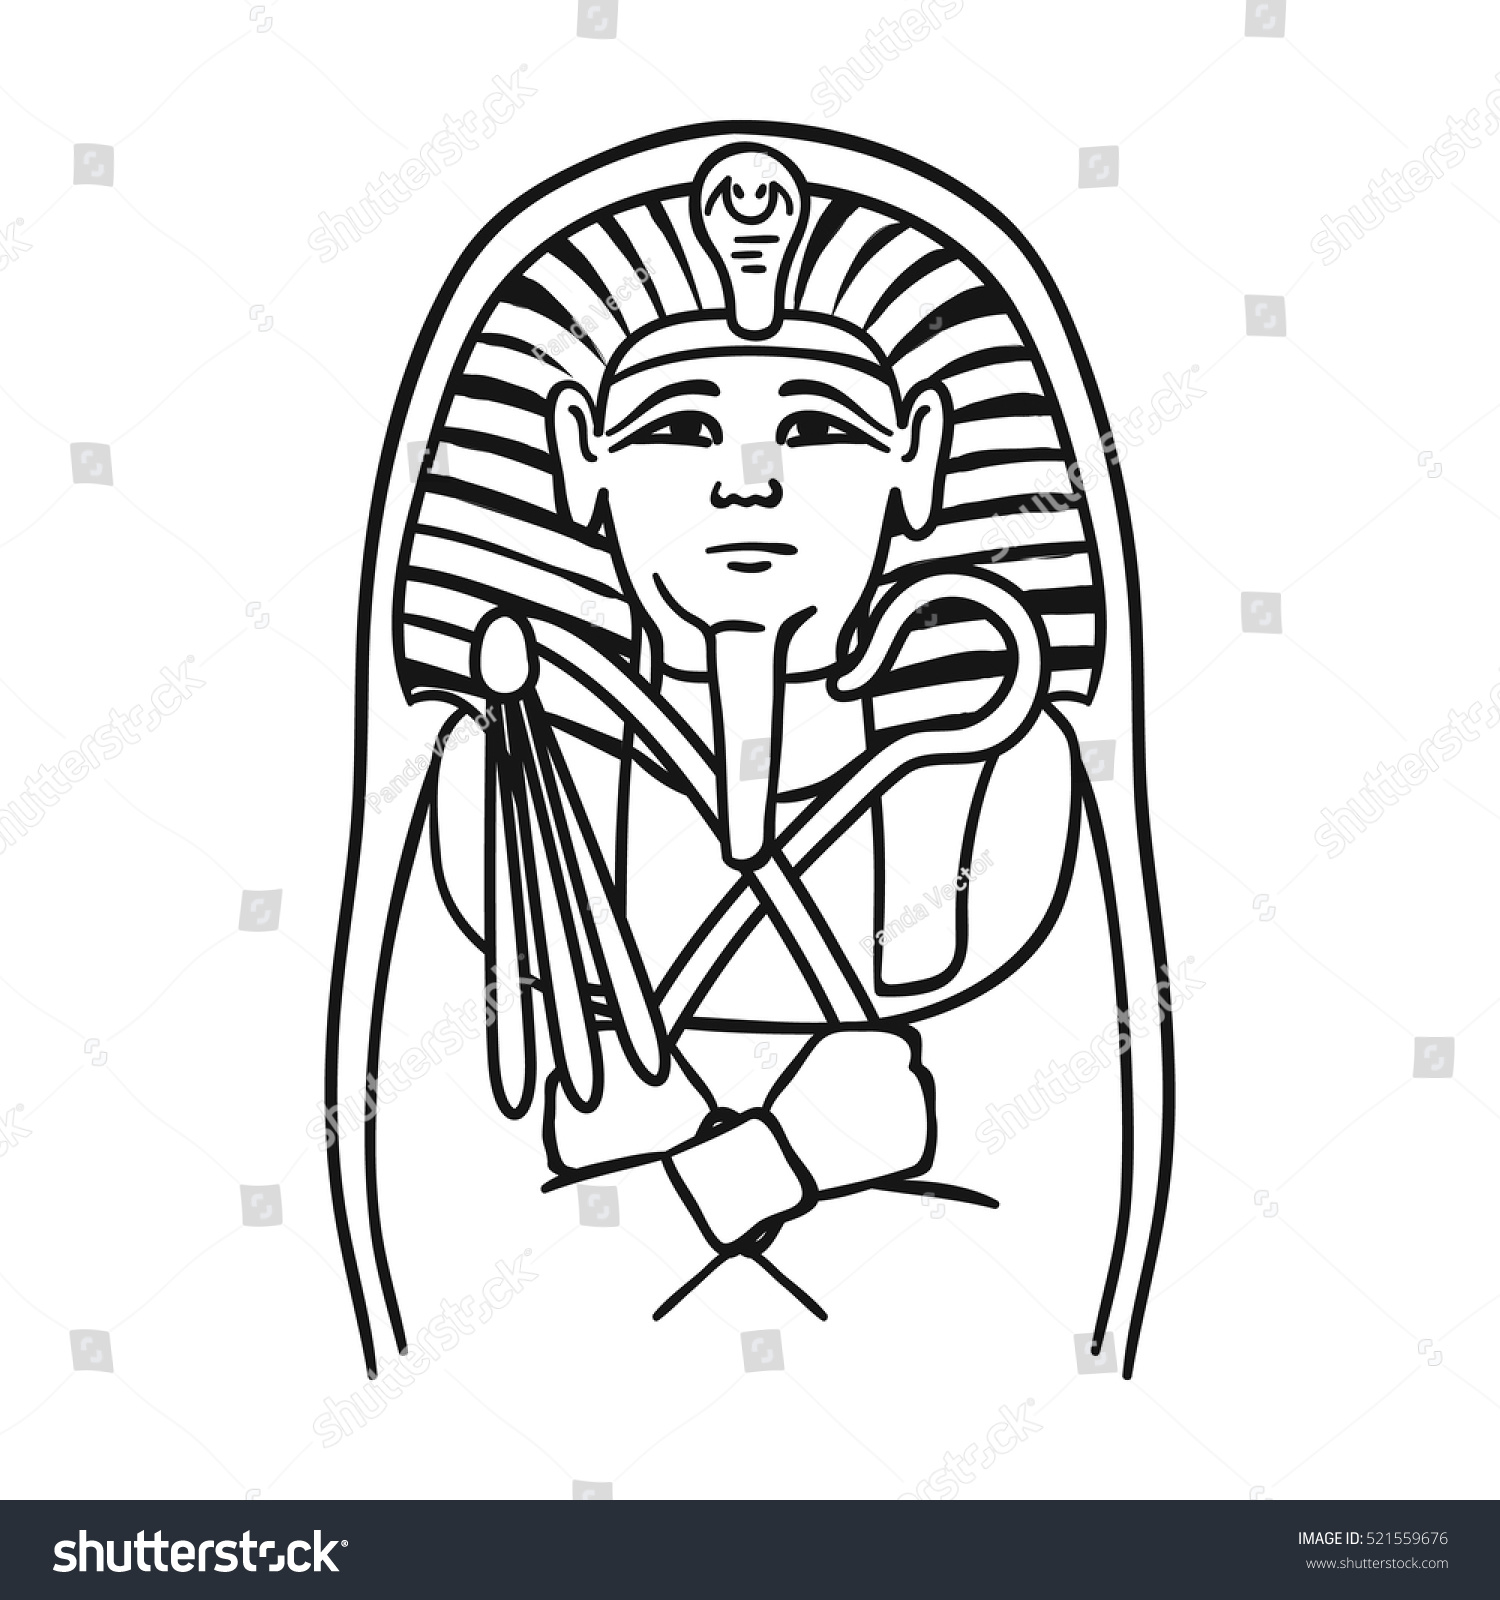 Египетский фараон рисунок саркофаг